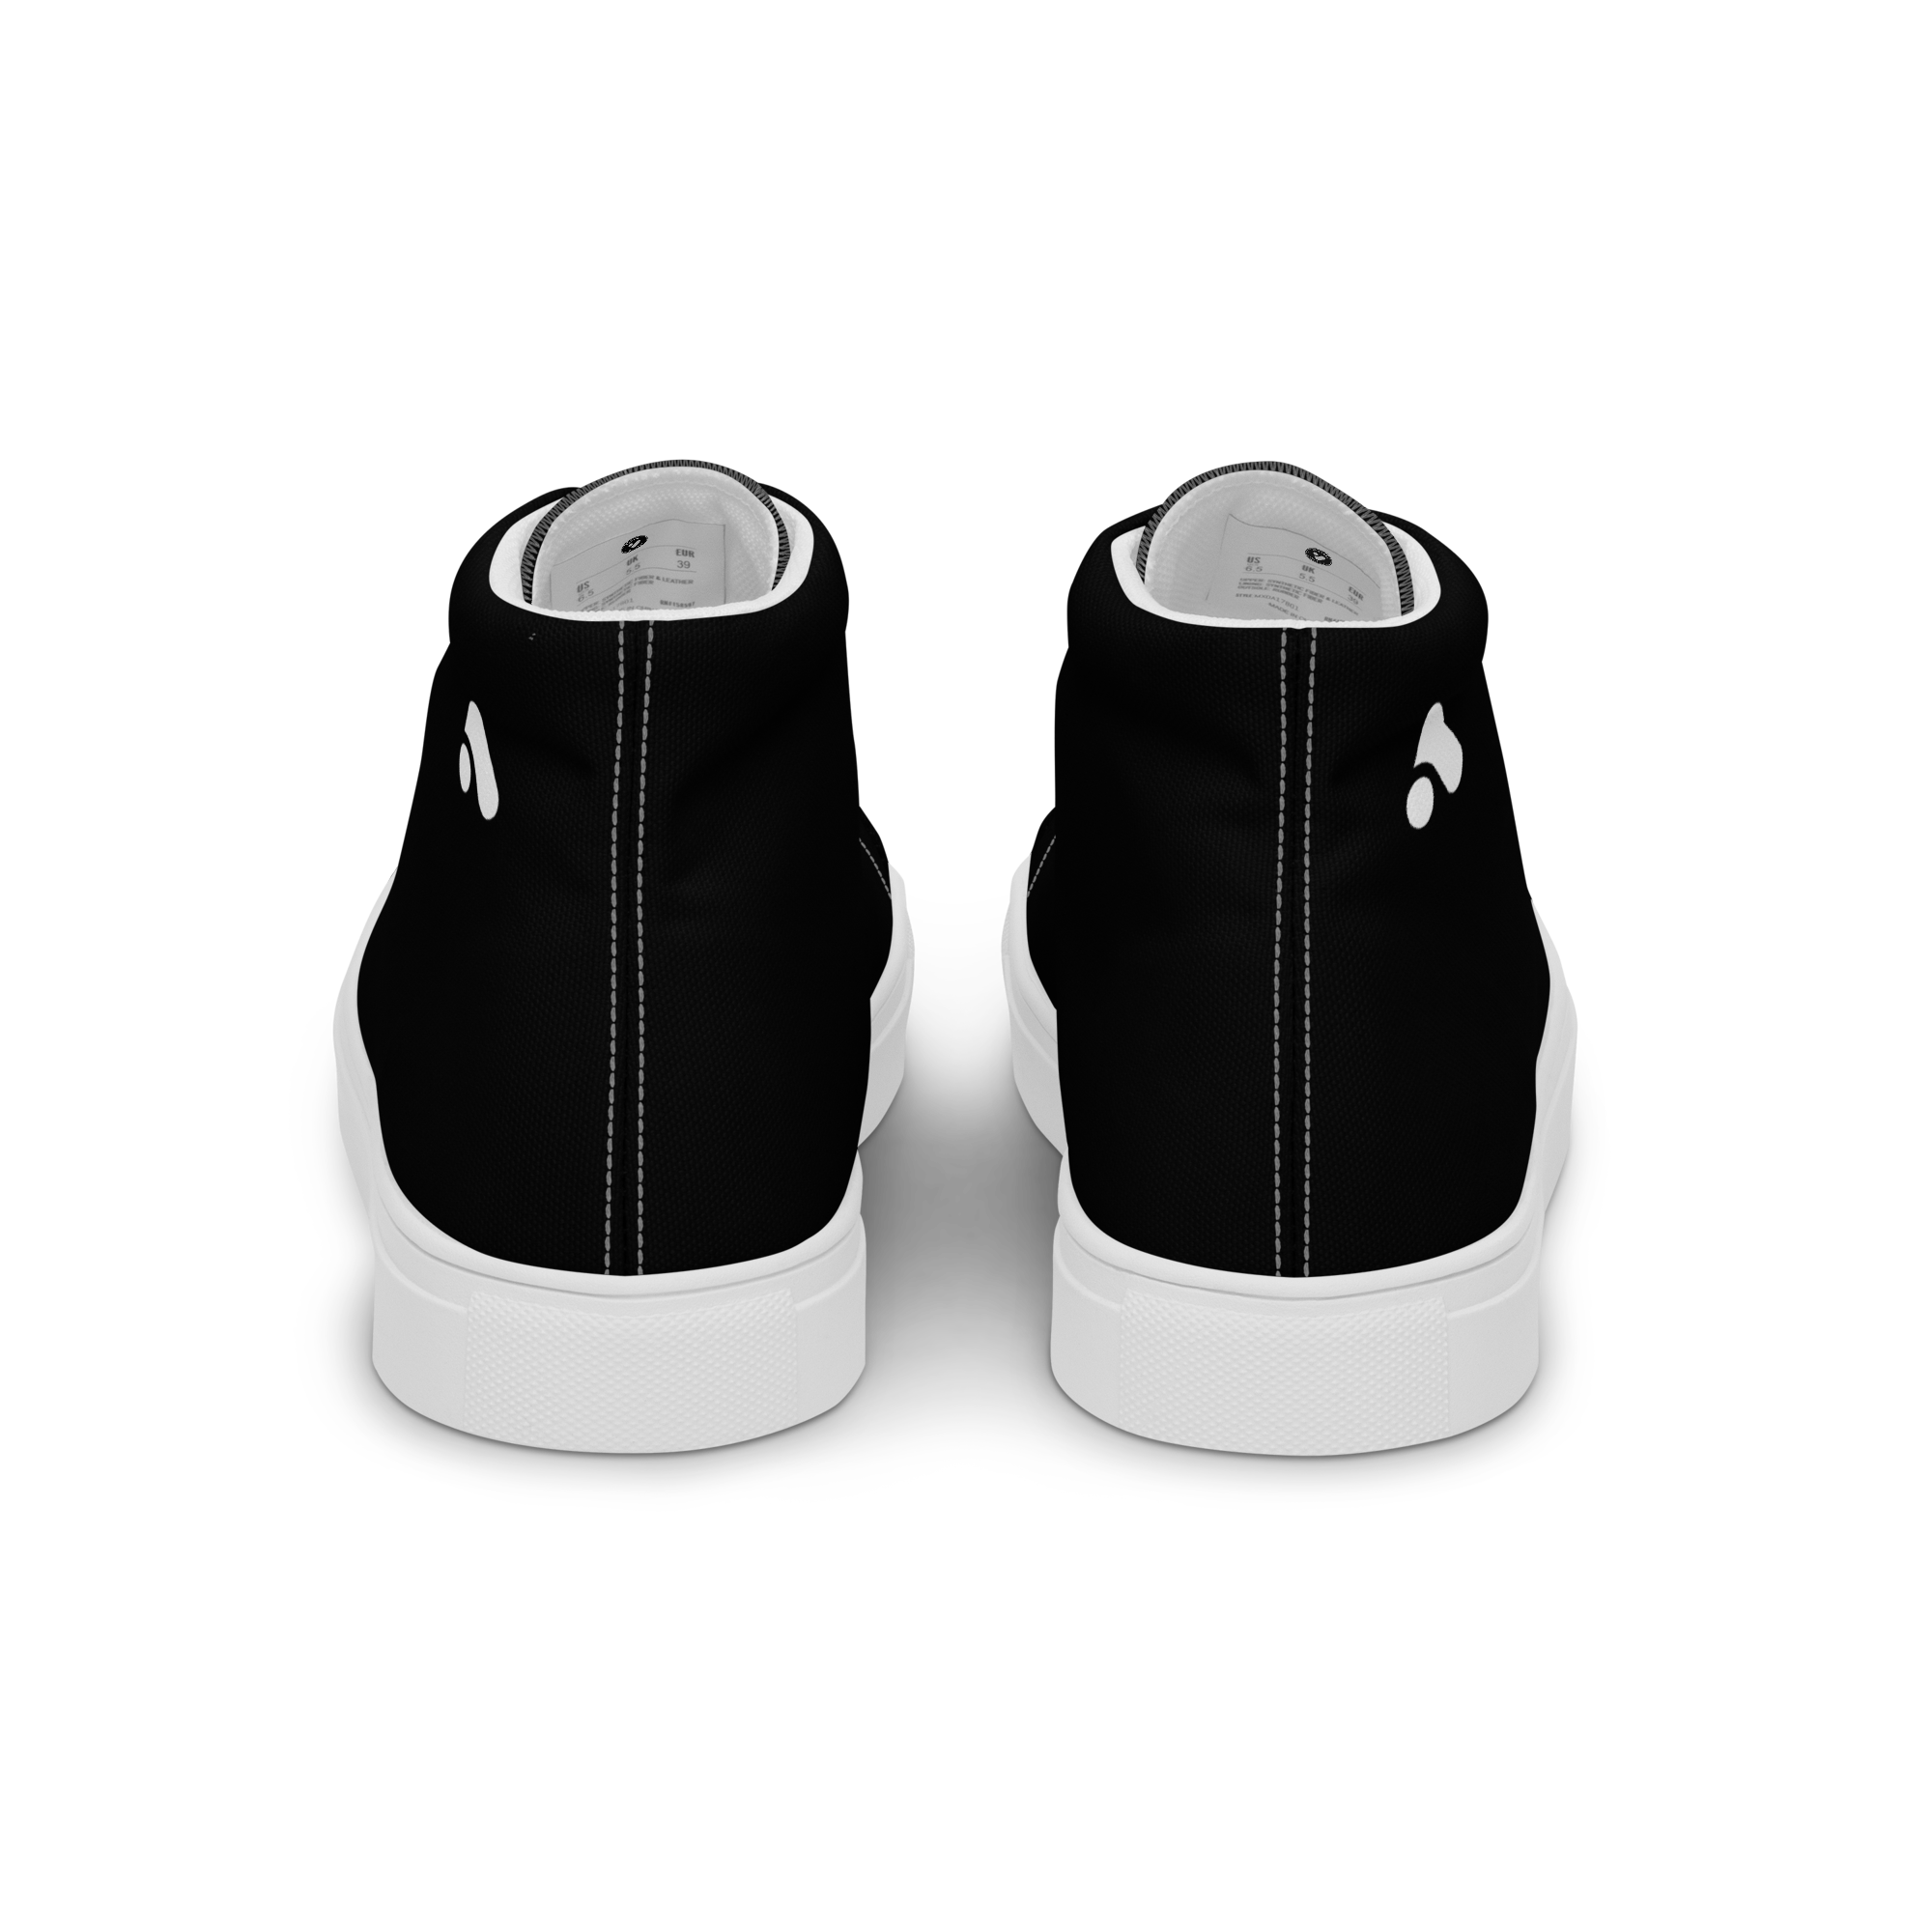 Women’s Black &amp; White High Top Sneaker